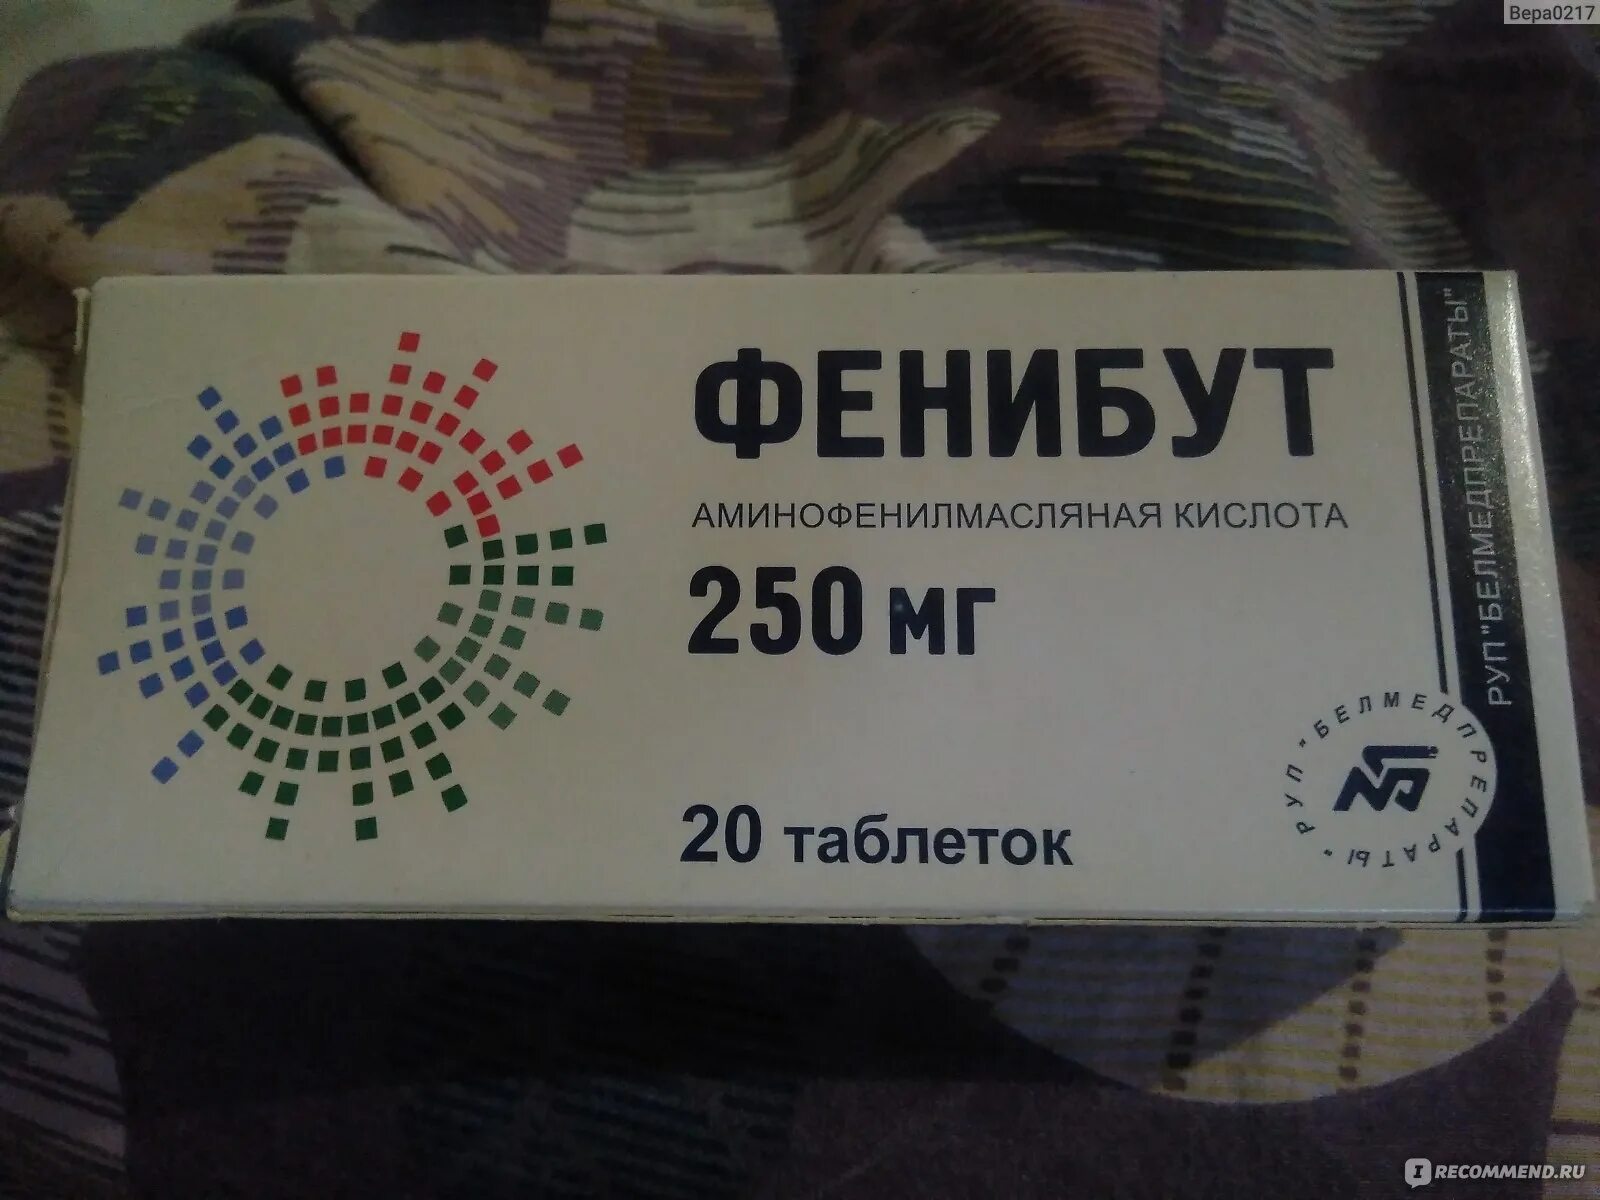 Фенибут можно купить в аптеке. Фенибут 250 мг Прибалтика. Фенибут 250 производитель Латвия. Фенибут 250 Прибалтика. Фенибут 250 мг латвийский.